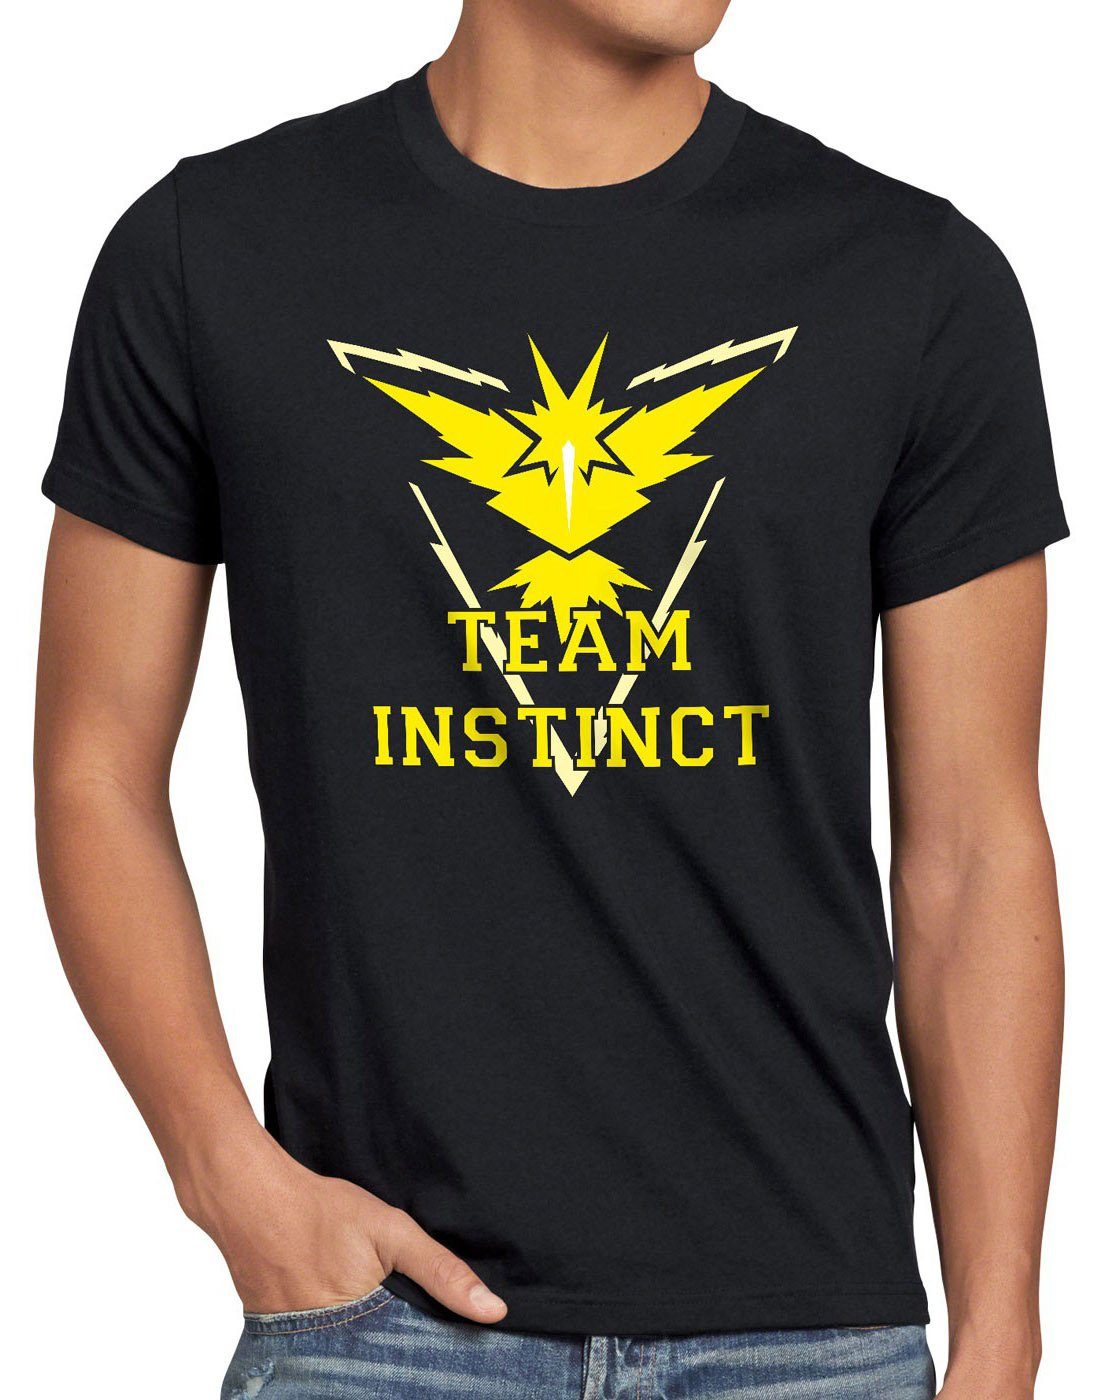 poke gelb Team arena boy poeball Print-Shirt style3 intuition schwarz Instinct instinkt game T-Shirt Herren